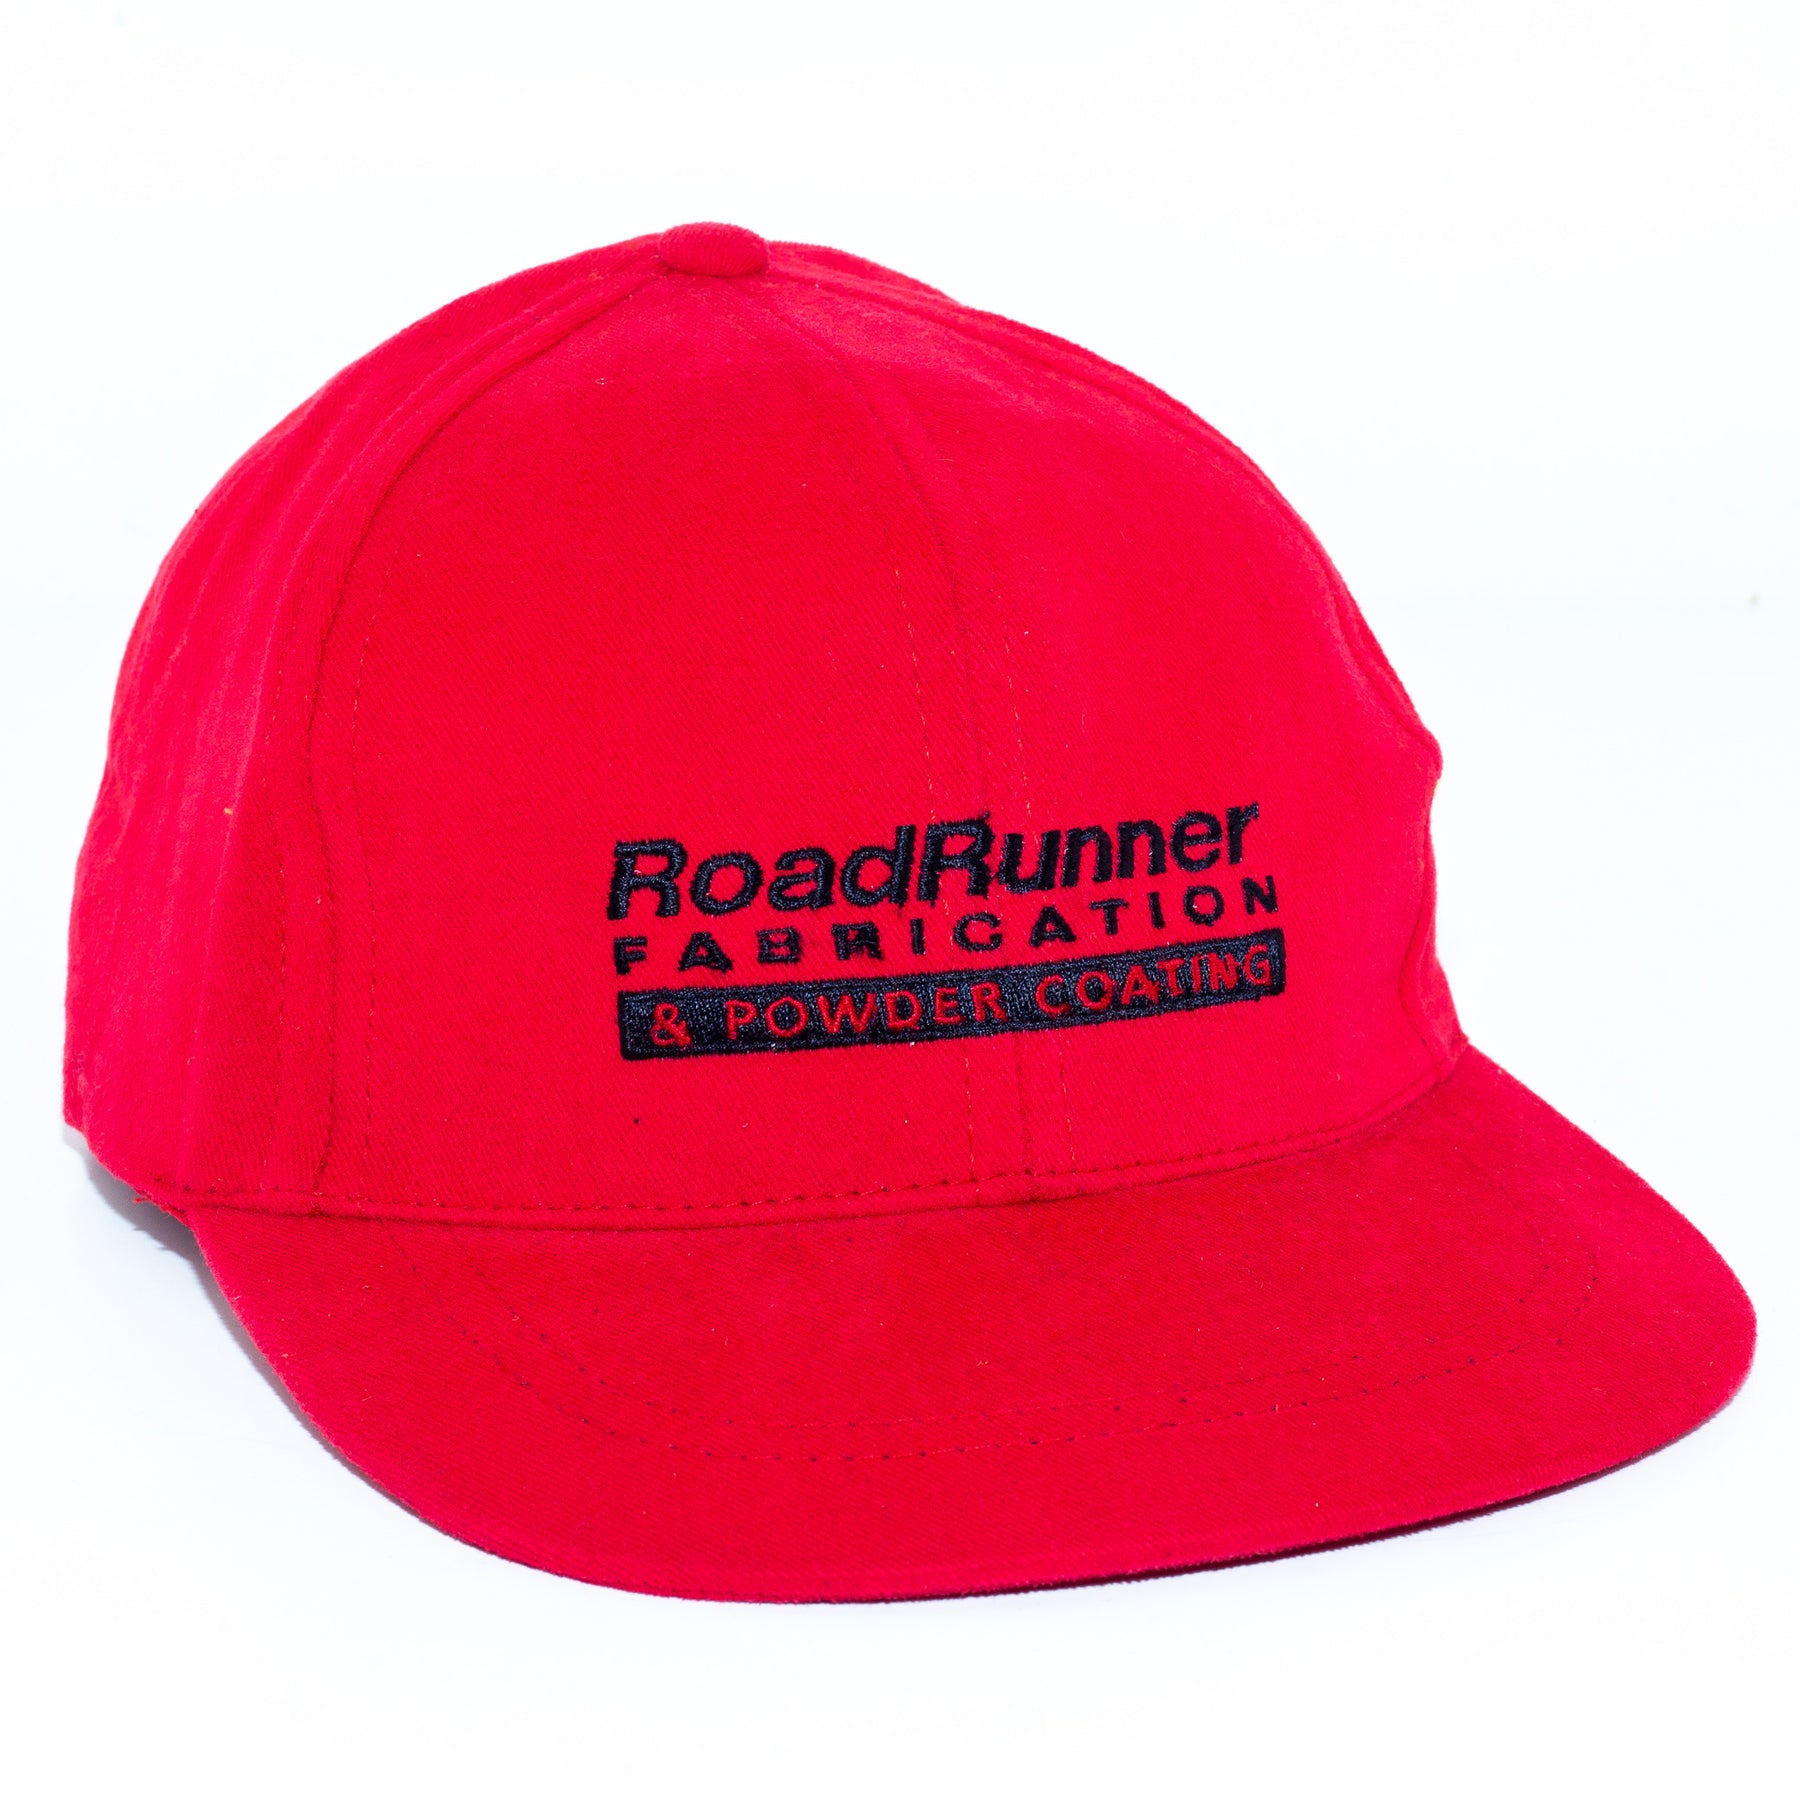 Vintage Denver Broncos Snapback Trucker Hat Cap Logo OG 80s 